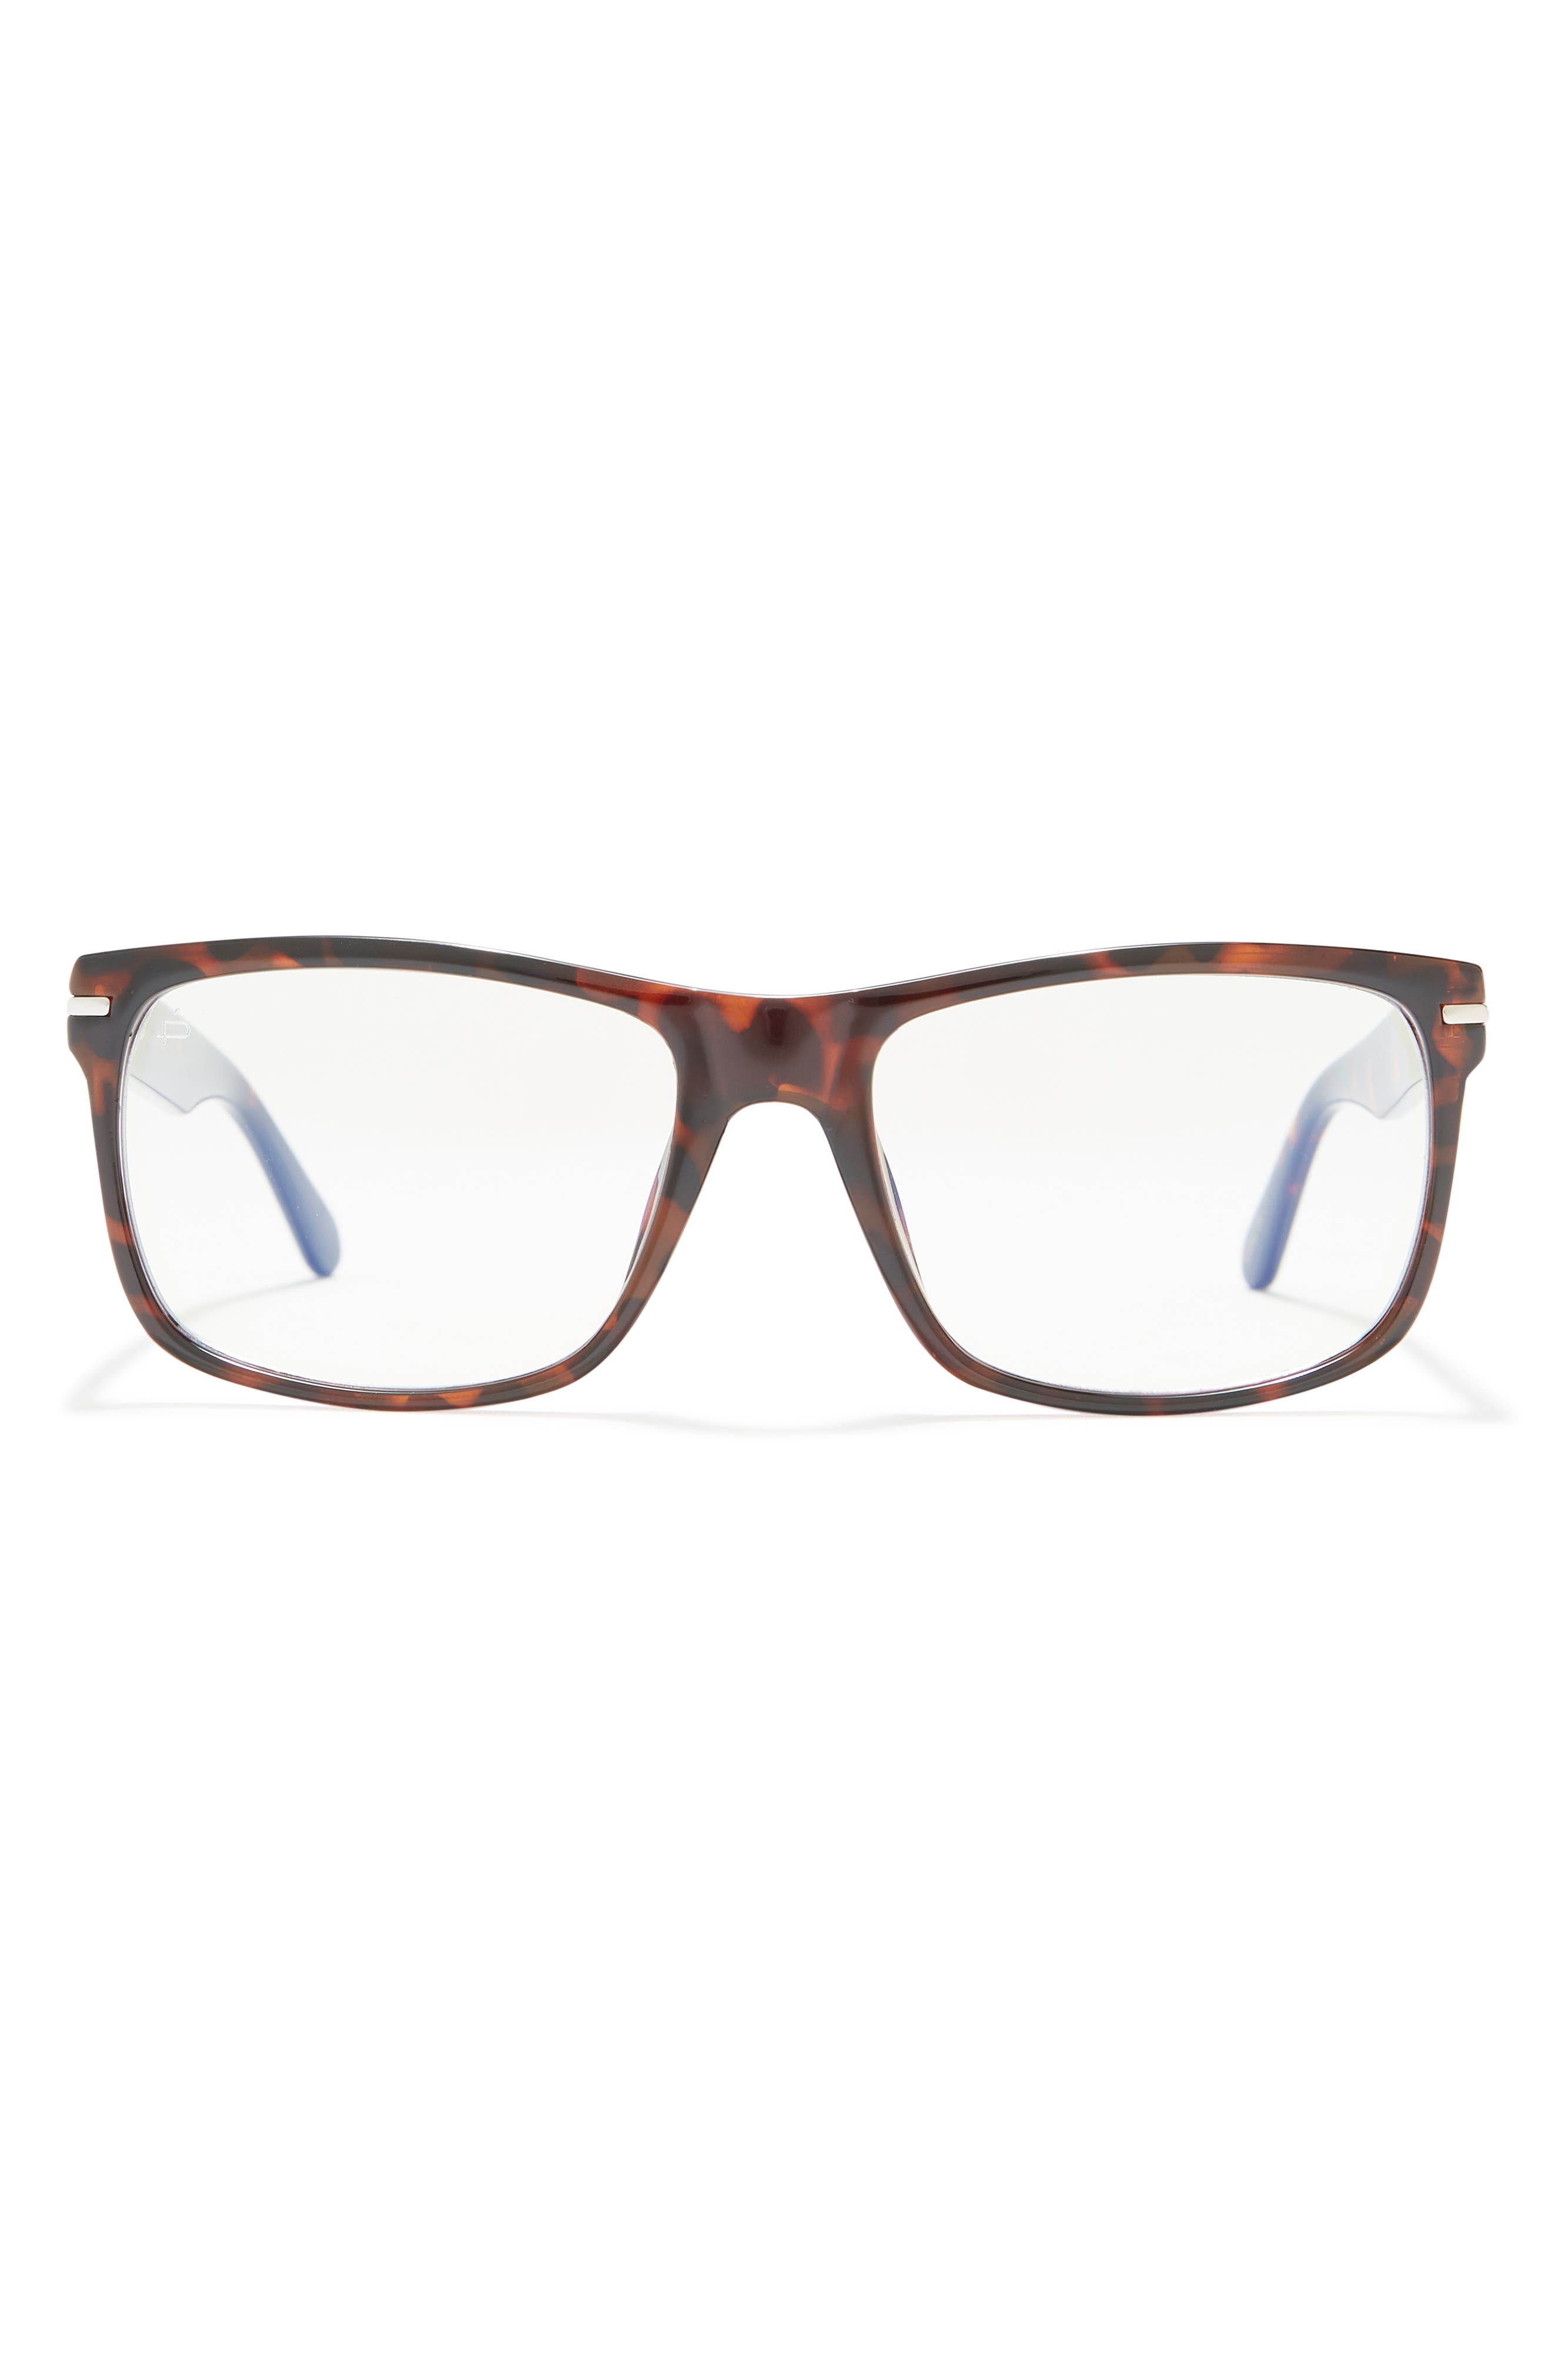 57-миллиметровые квадратные очки, блокирующие синий свет Prive Revaux